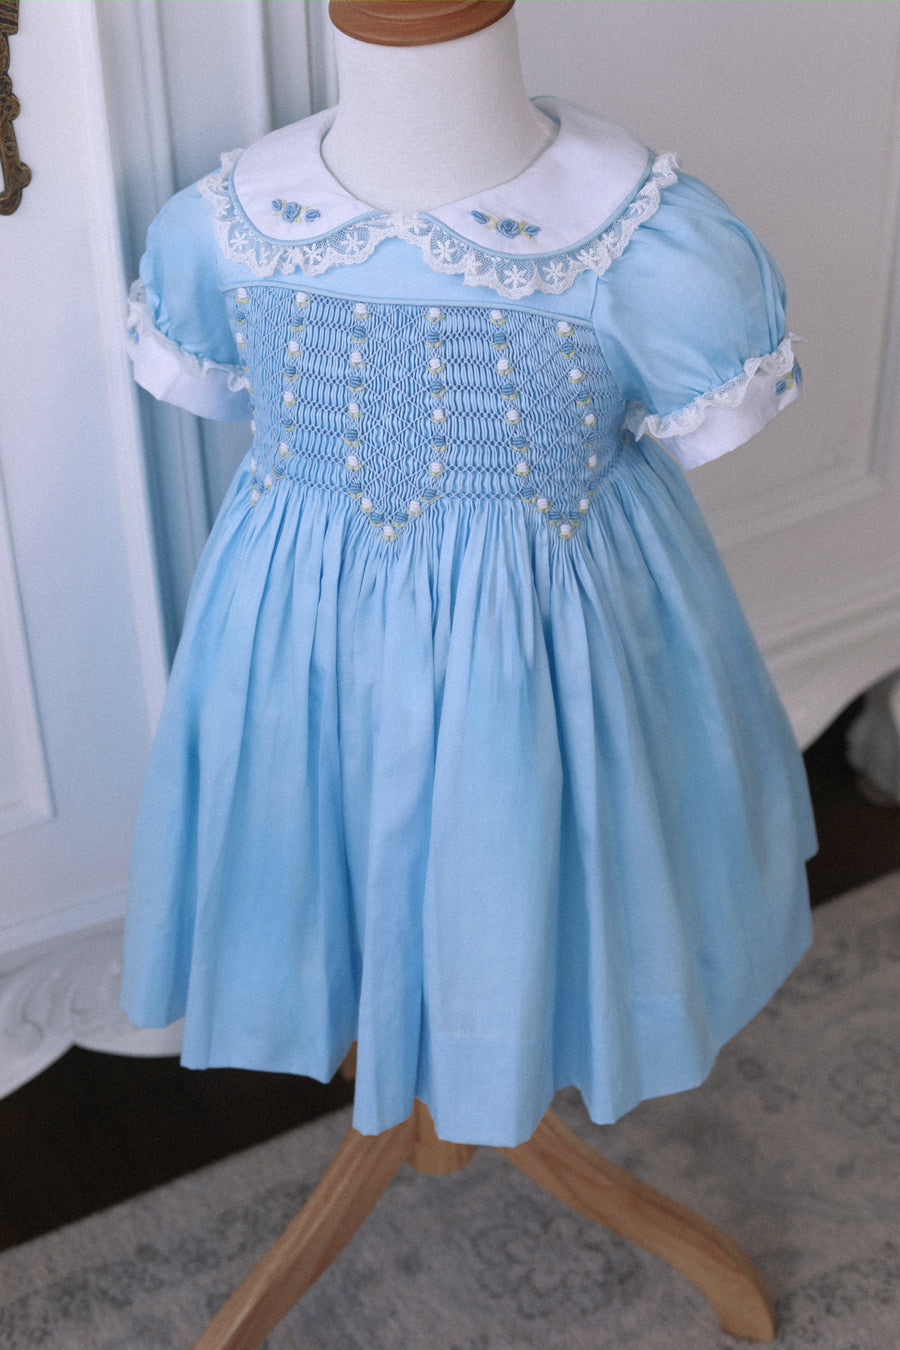 Bluebell Handsmocked Dress